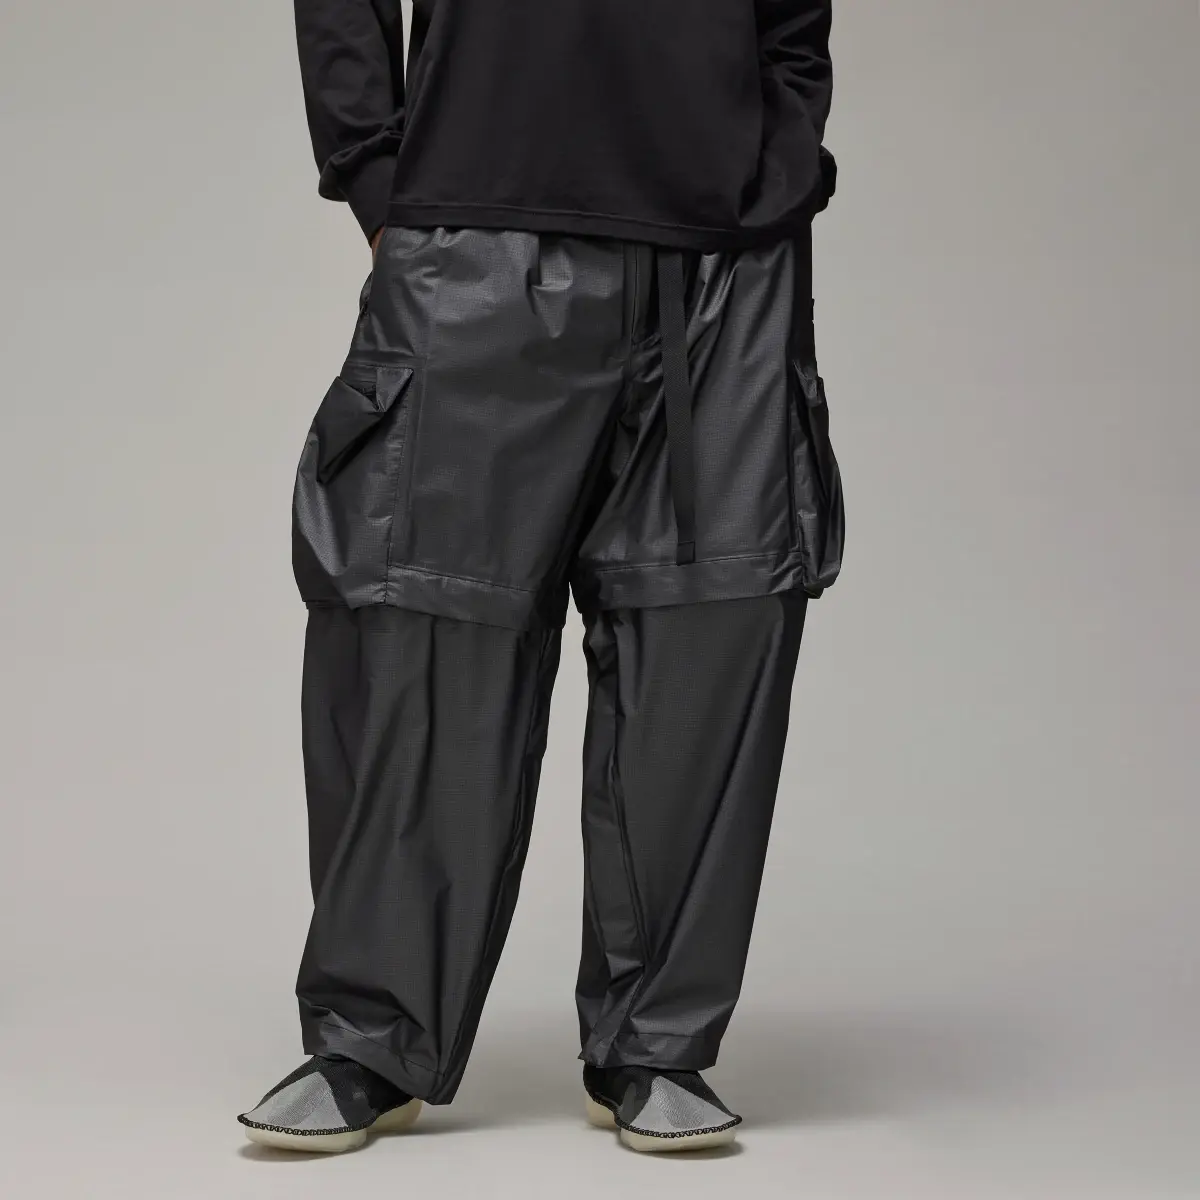 Adidas Y-3 GORE-TEX Pants. 1